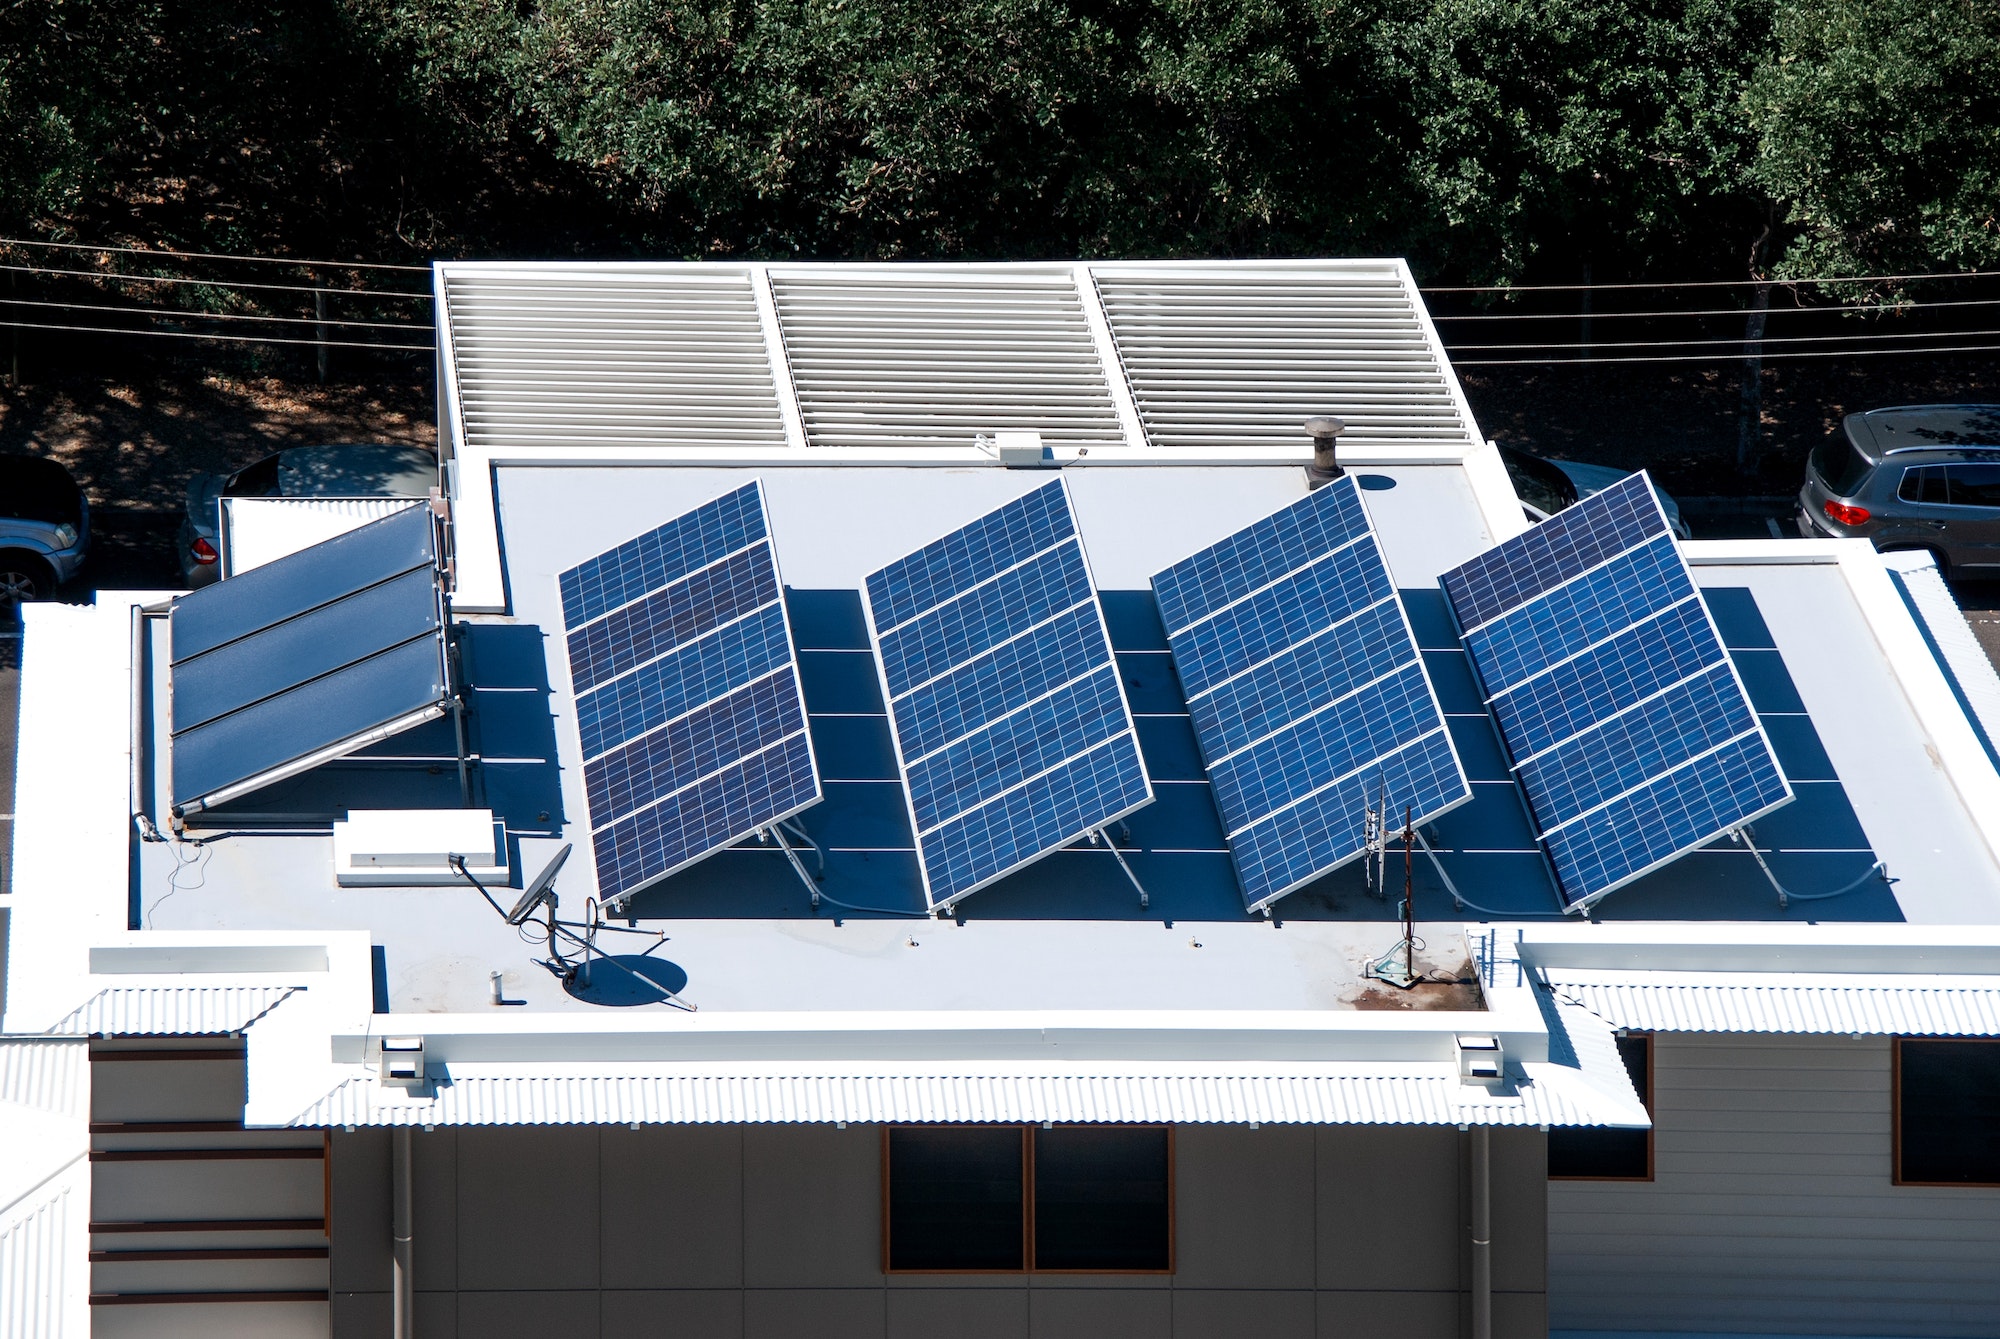 Comment augmenter l’efficacité de vos panneaux solaires montés sur le toit – Guide 2023